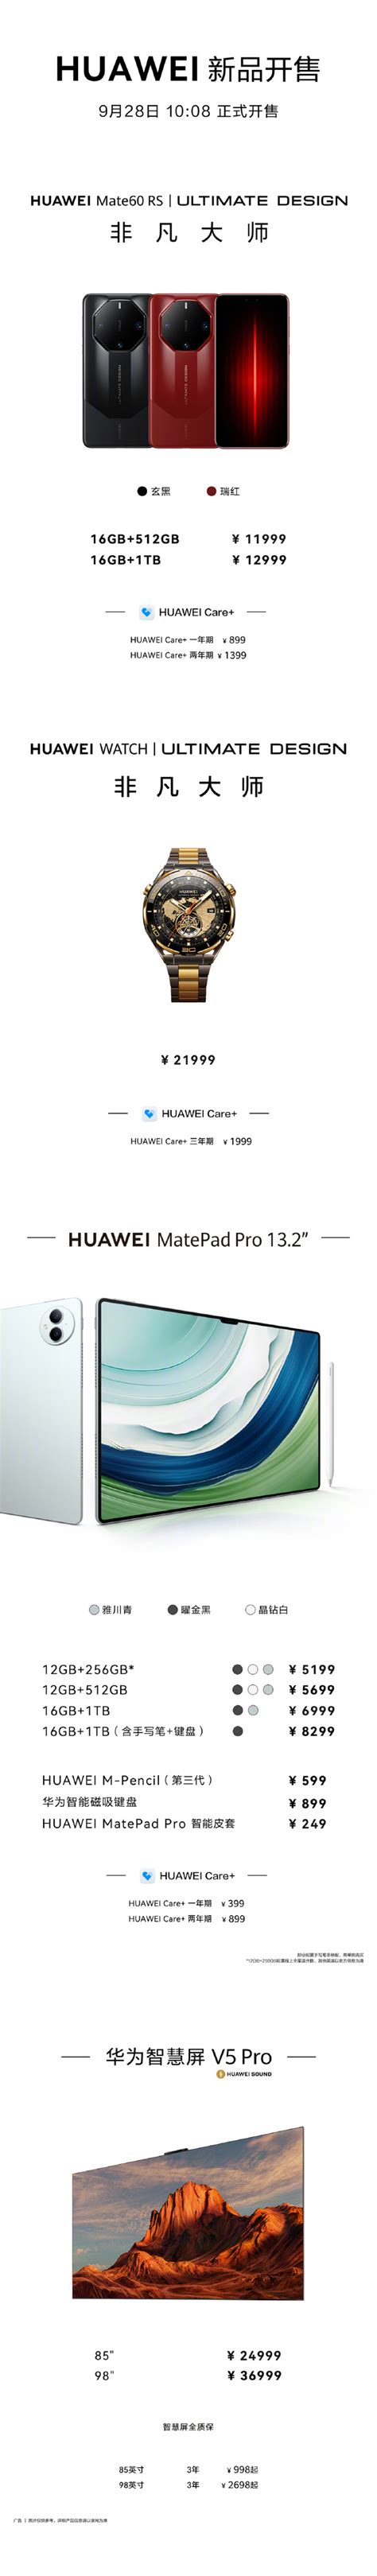 华为 Mate60 RS 非凡大师手机、MatePad Pro 13.2 今日 10:08 正式开售 - 通信终端 — C114通信网